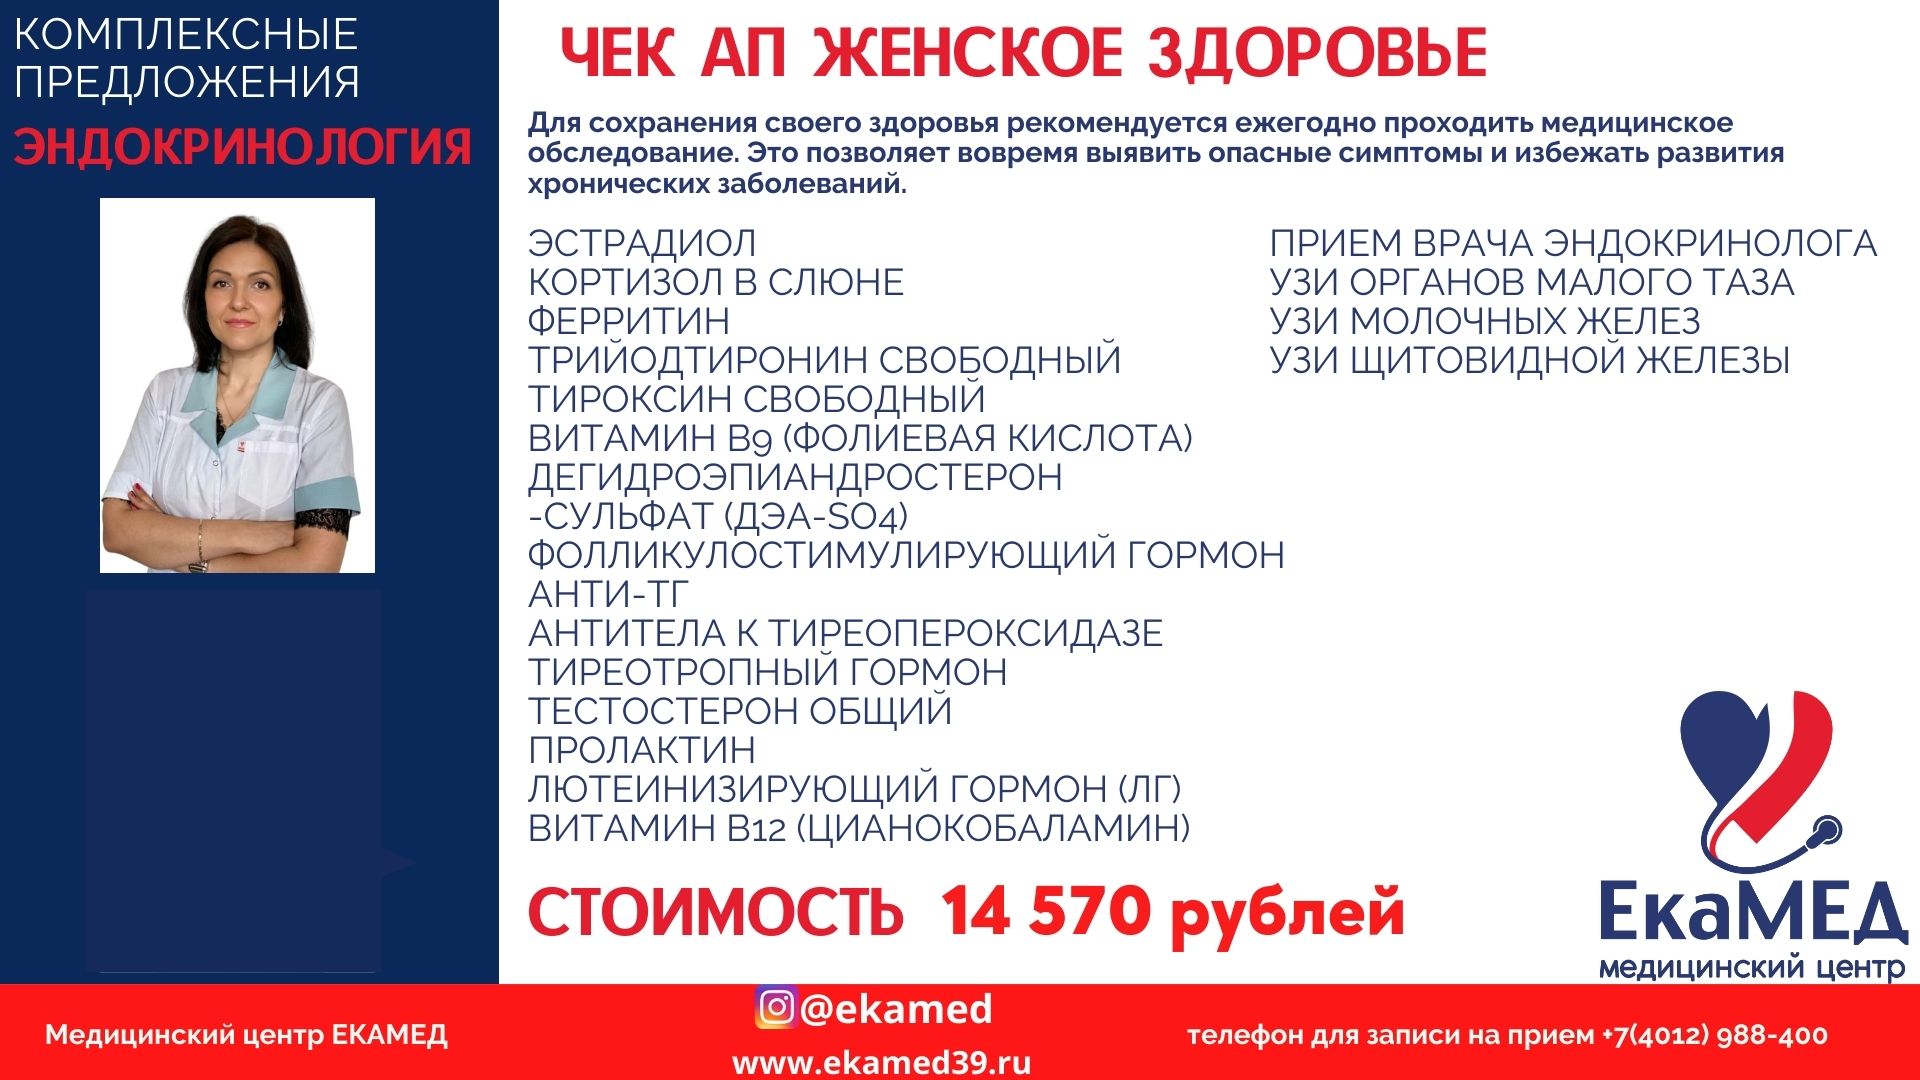 14 570 рублей